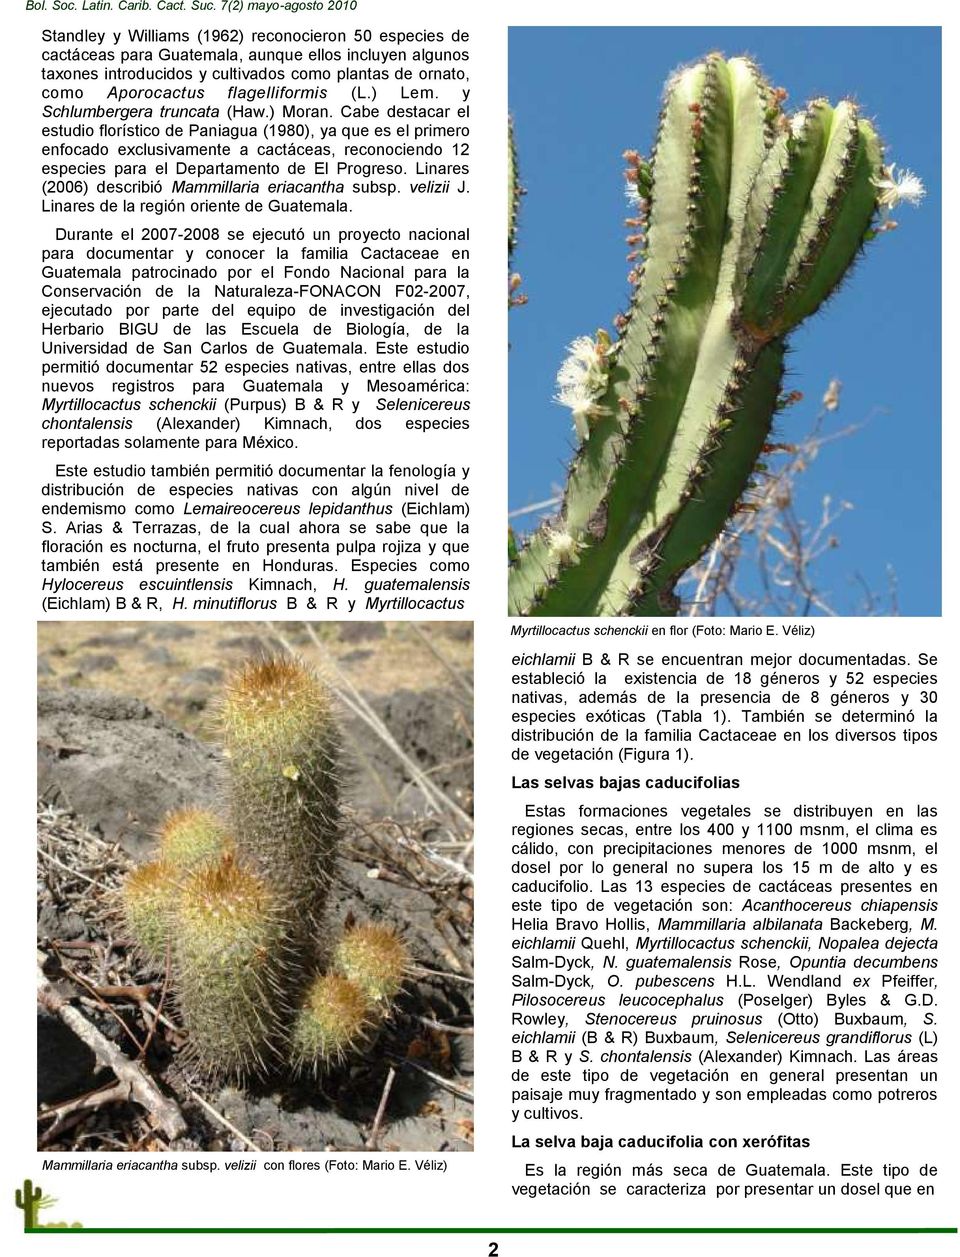 Cabe destacar el estudio florístico de Paniagua (1980), ya que es el primero enfocado exclusivamente a cactáceas, reconociendo 12 especies para el Departamento de El Progreso.